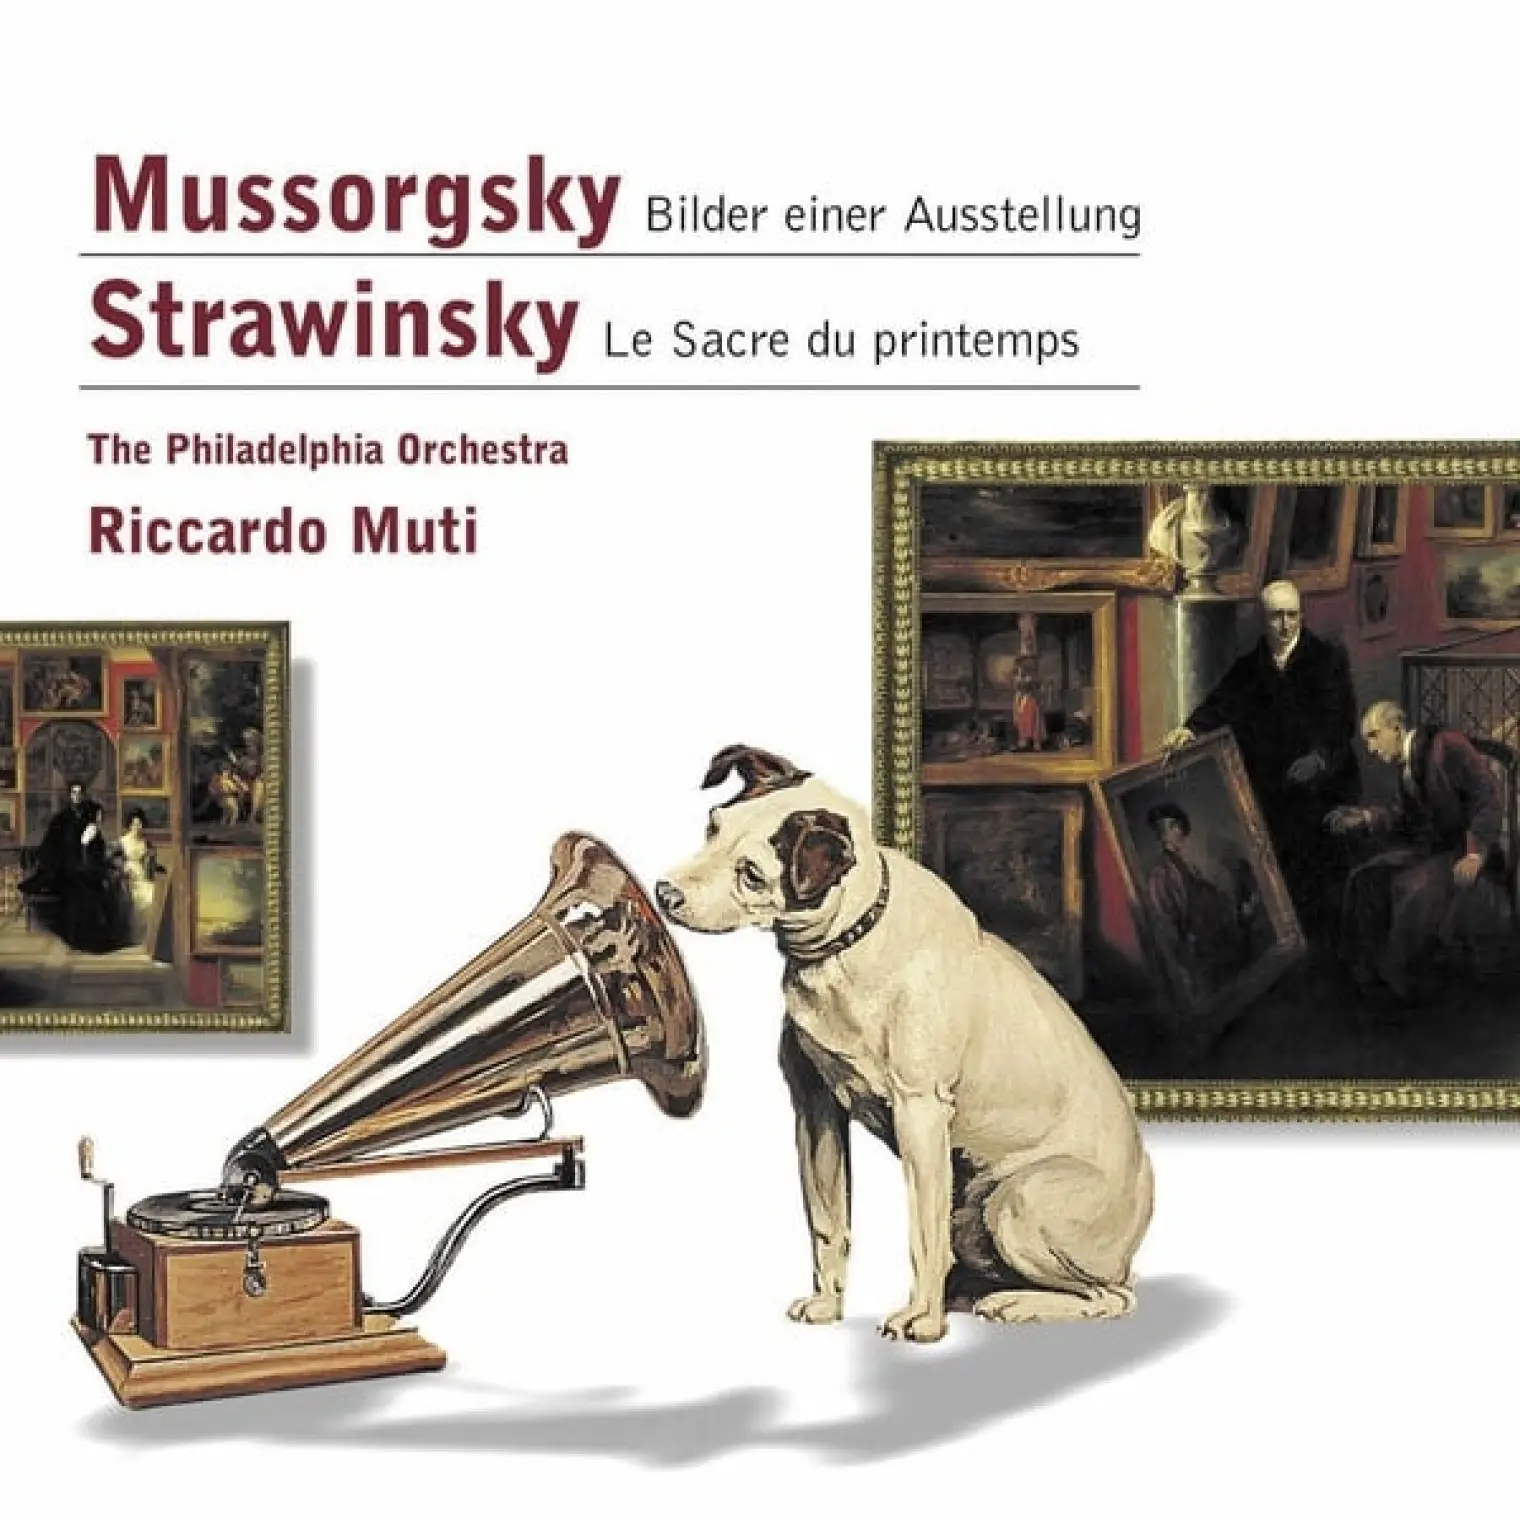 Mussorgsky: Bilder einer Ausstellung - Stravinsky: Le Sacre du printemps -  Philadelphia Orchestra 